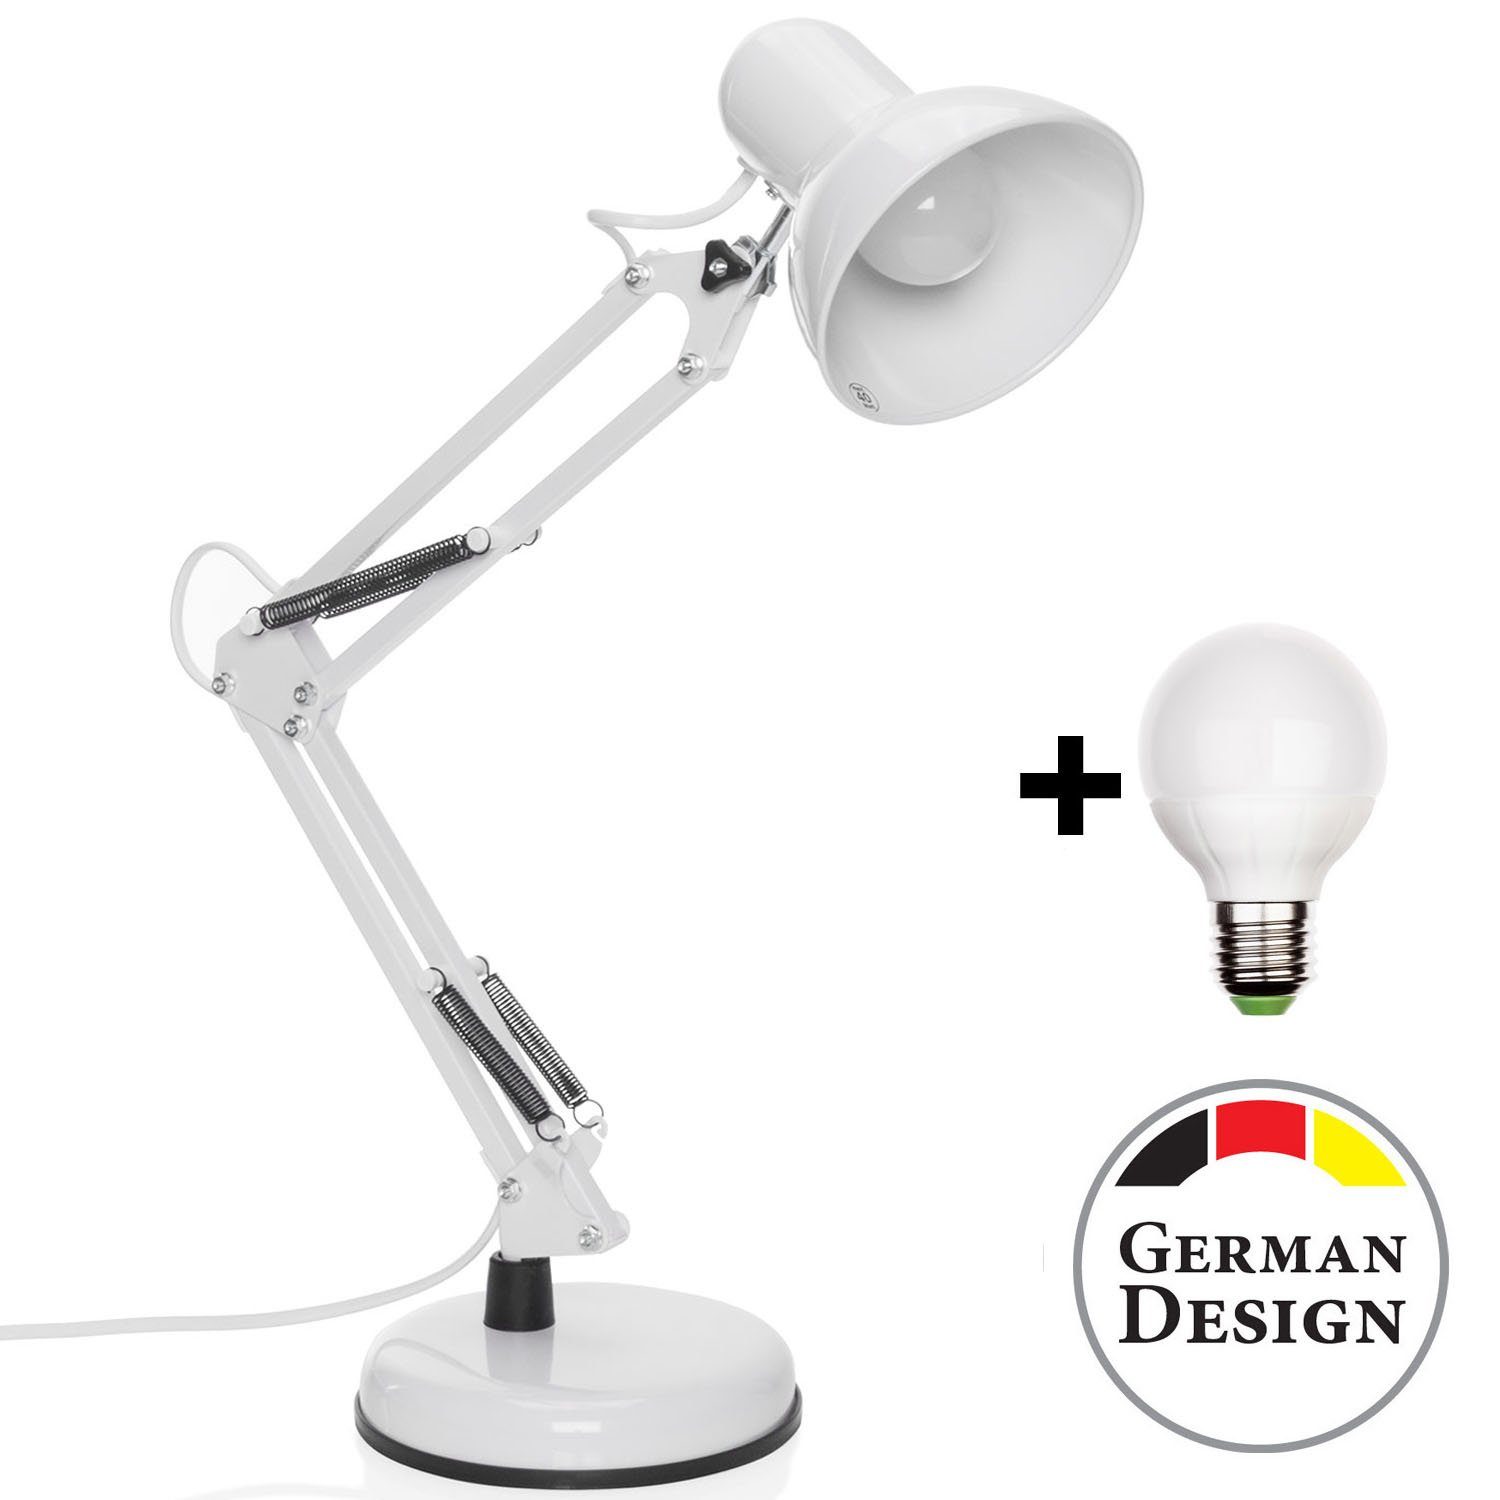 Arbeitsplatzlampe Goods+Gadgets Leselampe, Retro Tischlampe, Gelenk-Arm LED LED Weiß Schreibtischlampe wechselbar,